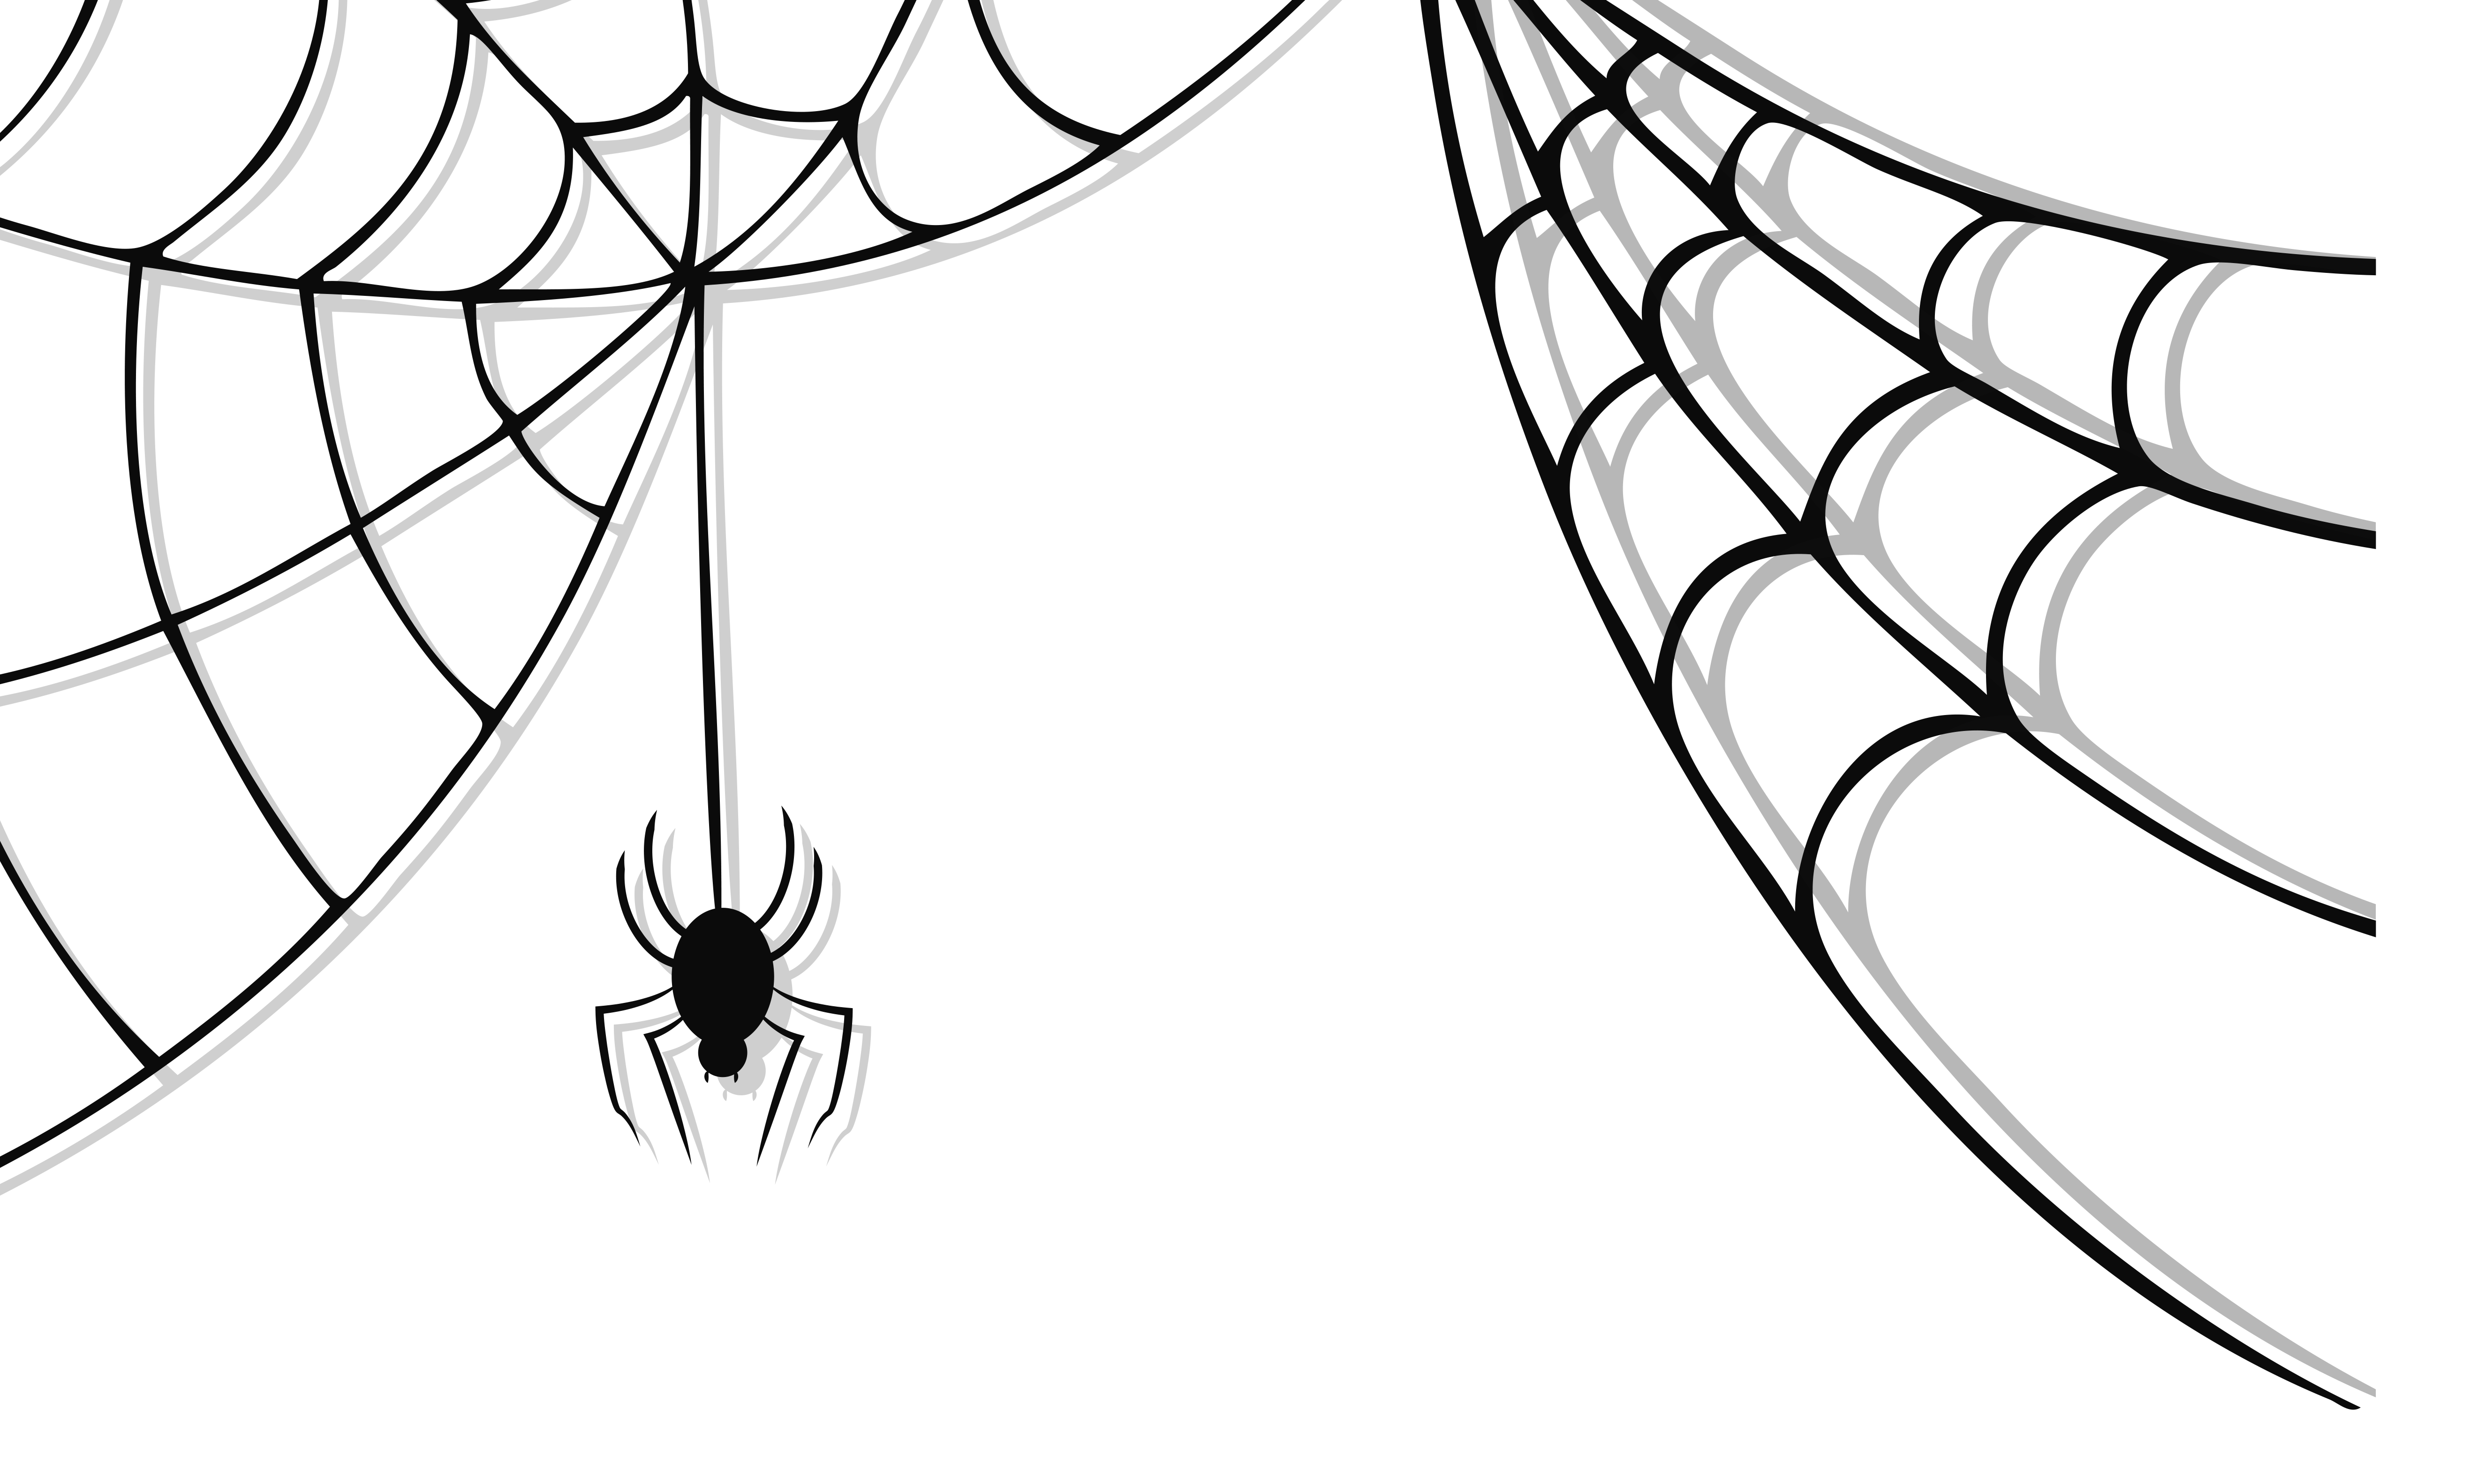 Spider web web clipart tumund